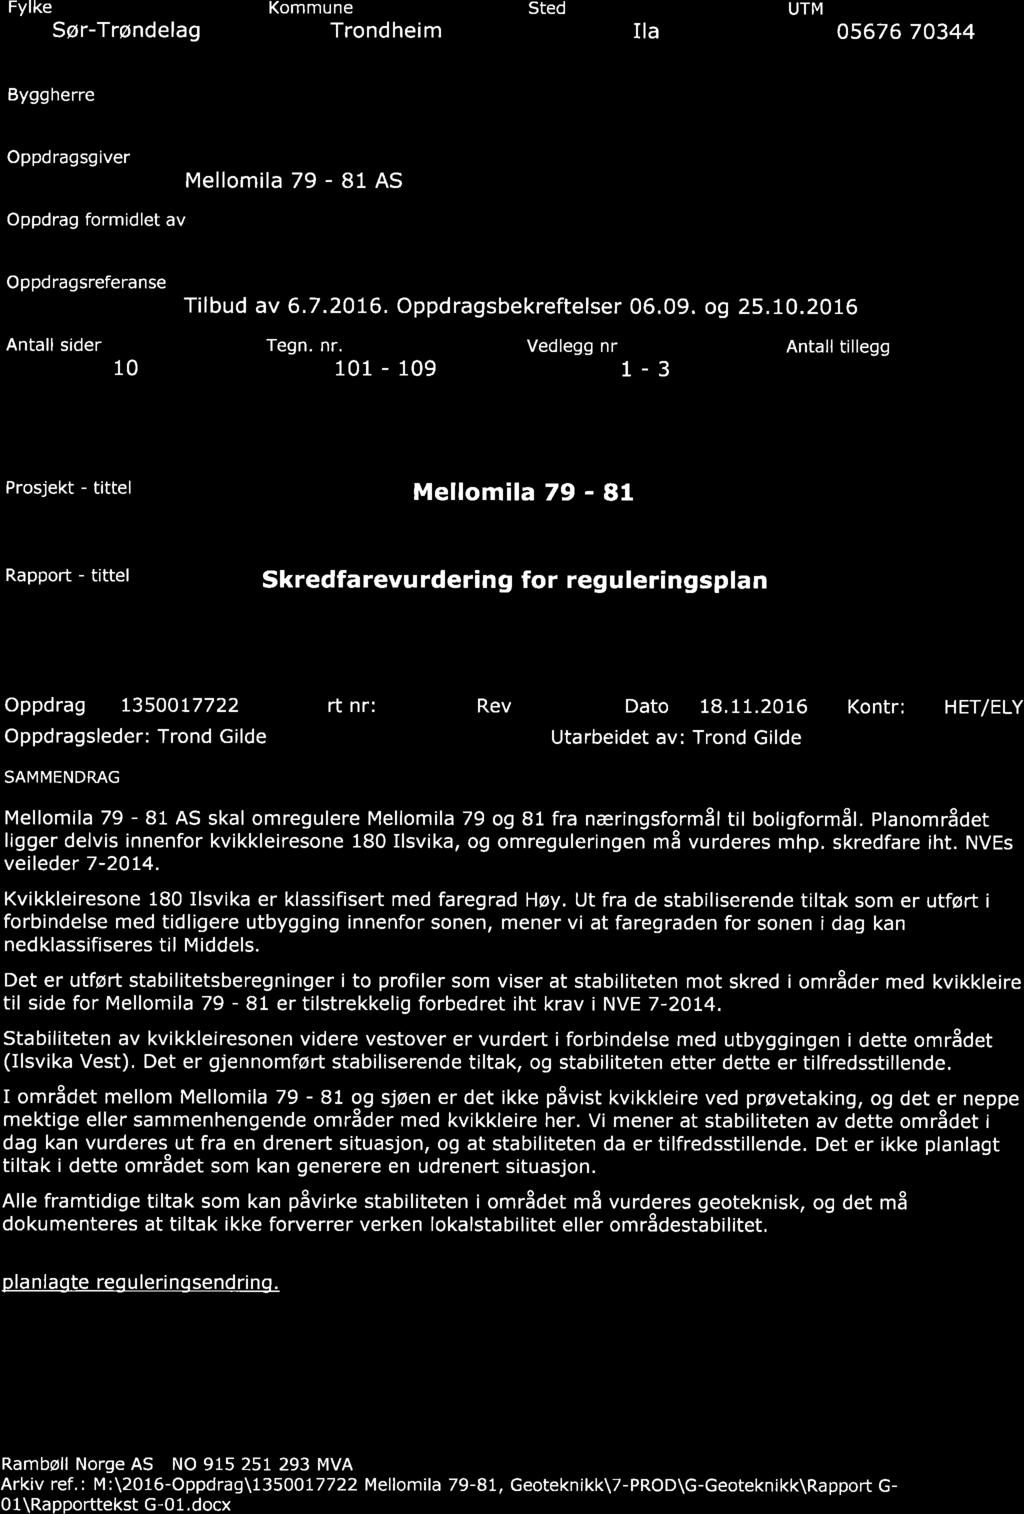 RAMB LL Fylke Sør-Trøndelag Kommune Trondheim Sted Ila UTM 05676 70344 Byggherre Oppdragsgiver Mellomila 79-81 AS Oppdrag formidlet av Oppdragsreferanse Tilbud av 6.7.2076. Oppdragsbekreftelser 06.09.